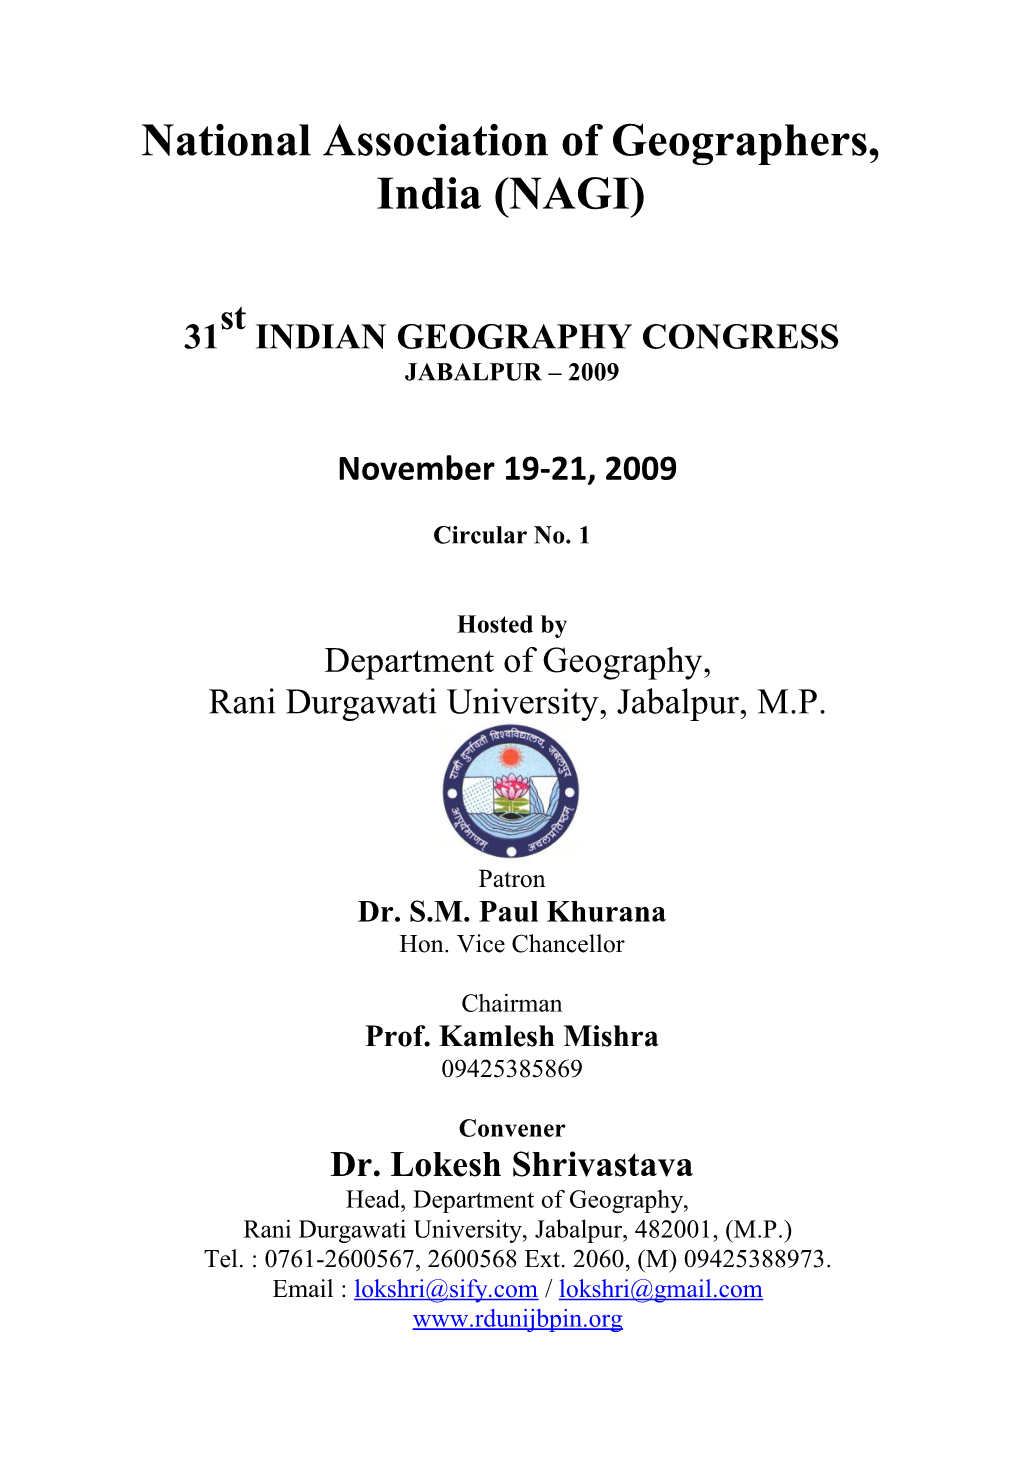 National Association of Geographers, India (NAGI)